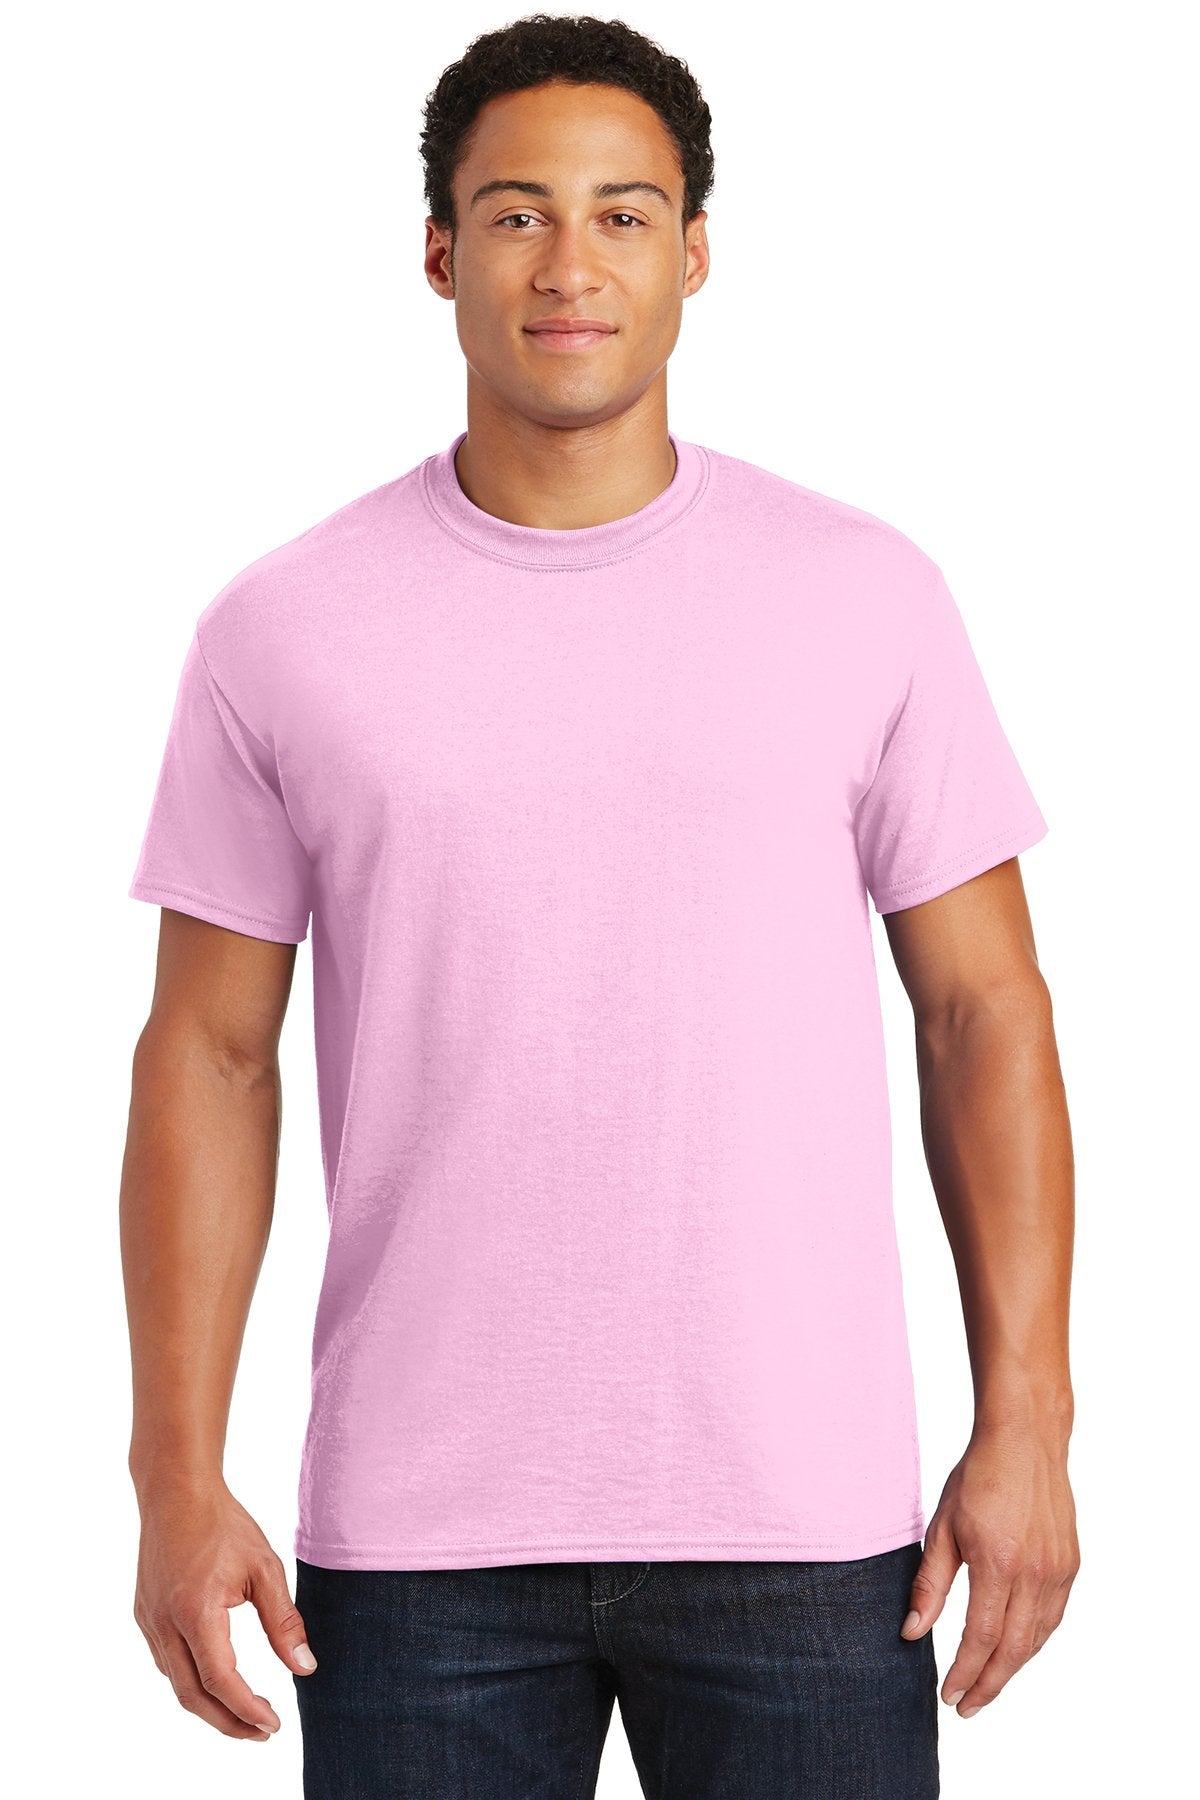 Gildan Dryblend Cotton Poly T Shirt in Light Pink, add a custom design